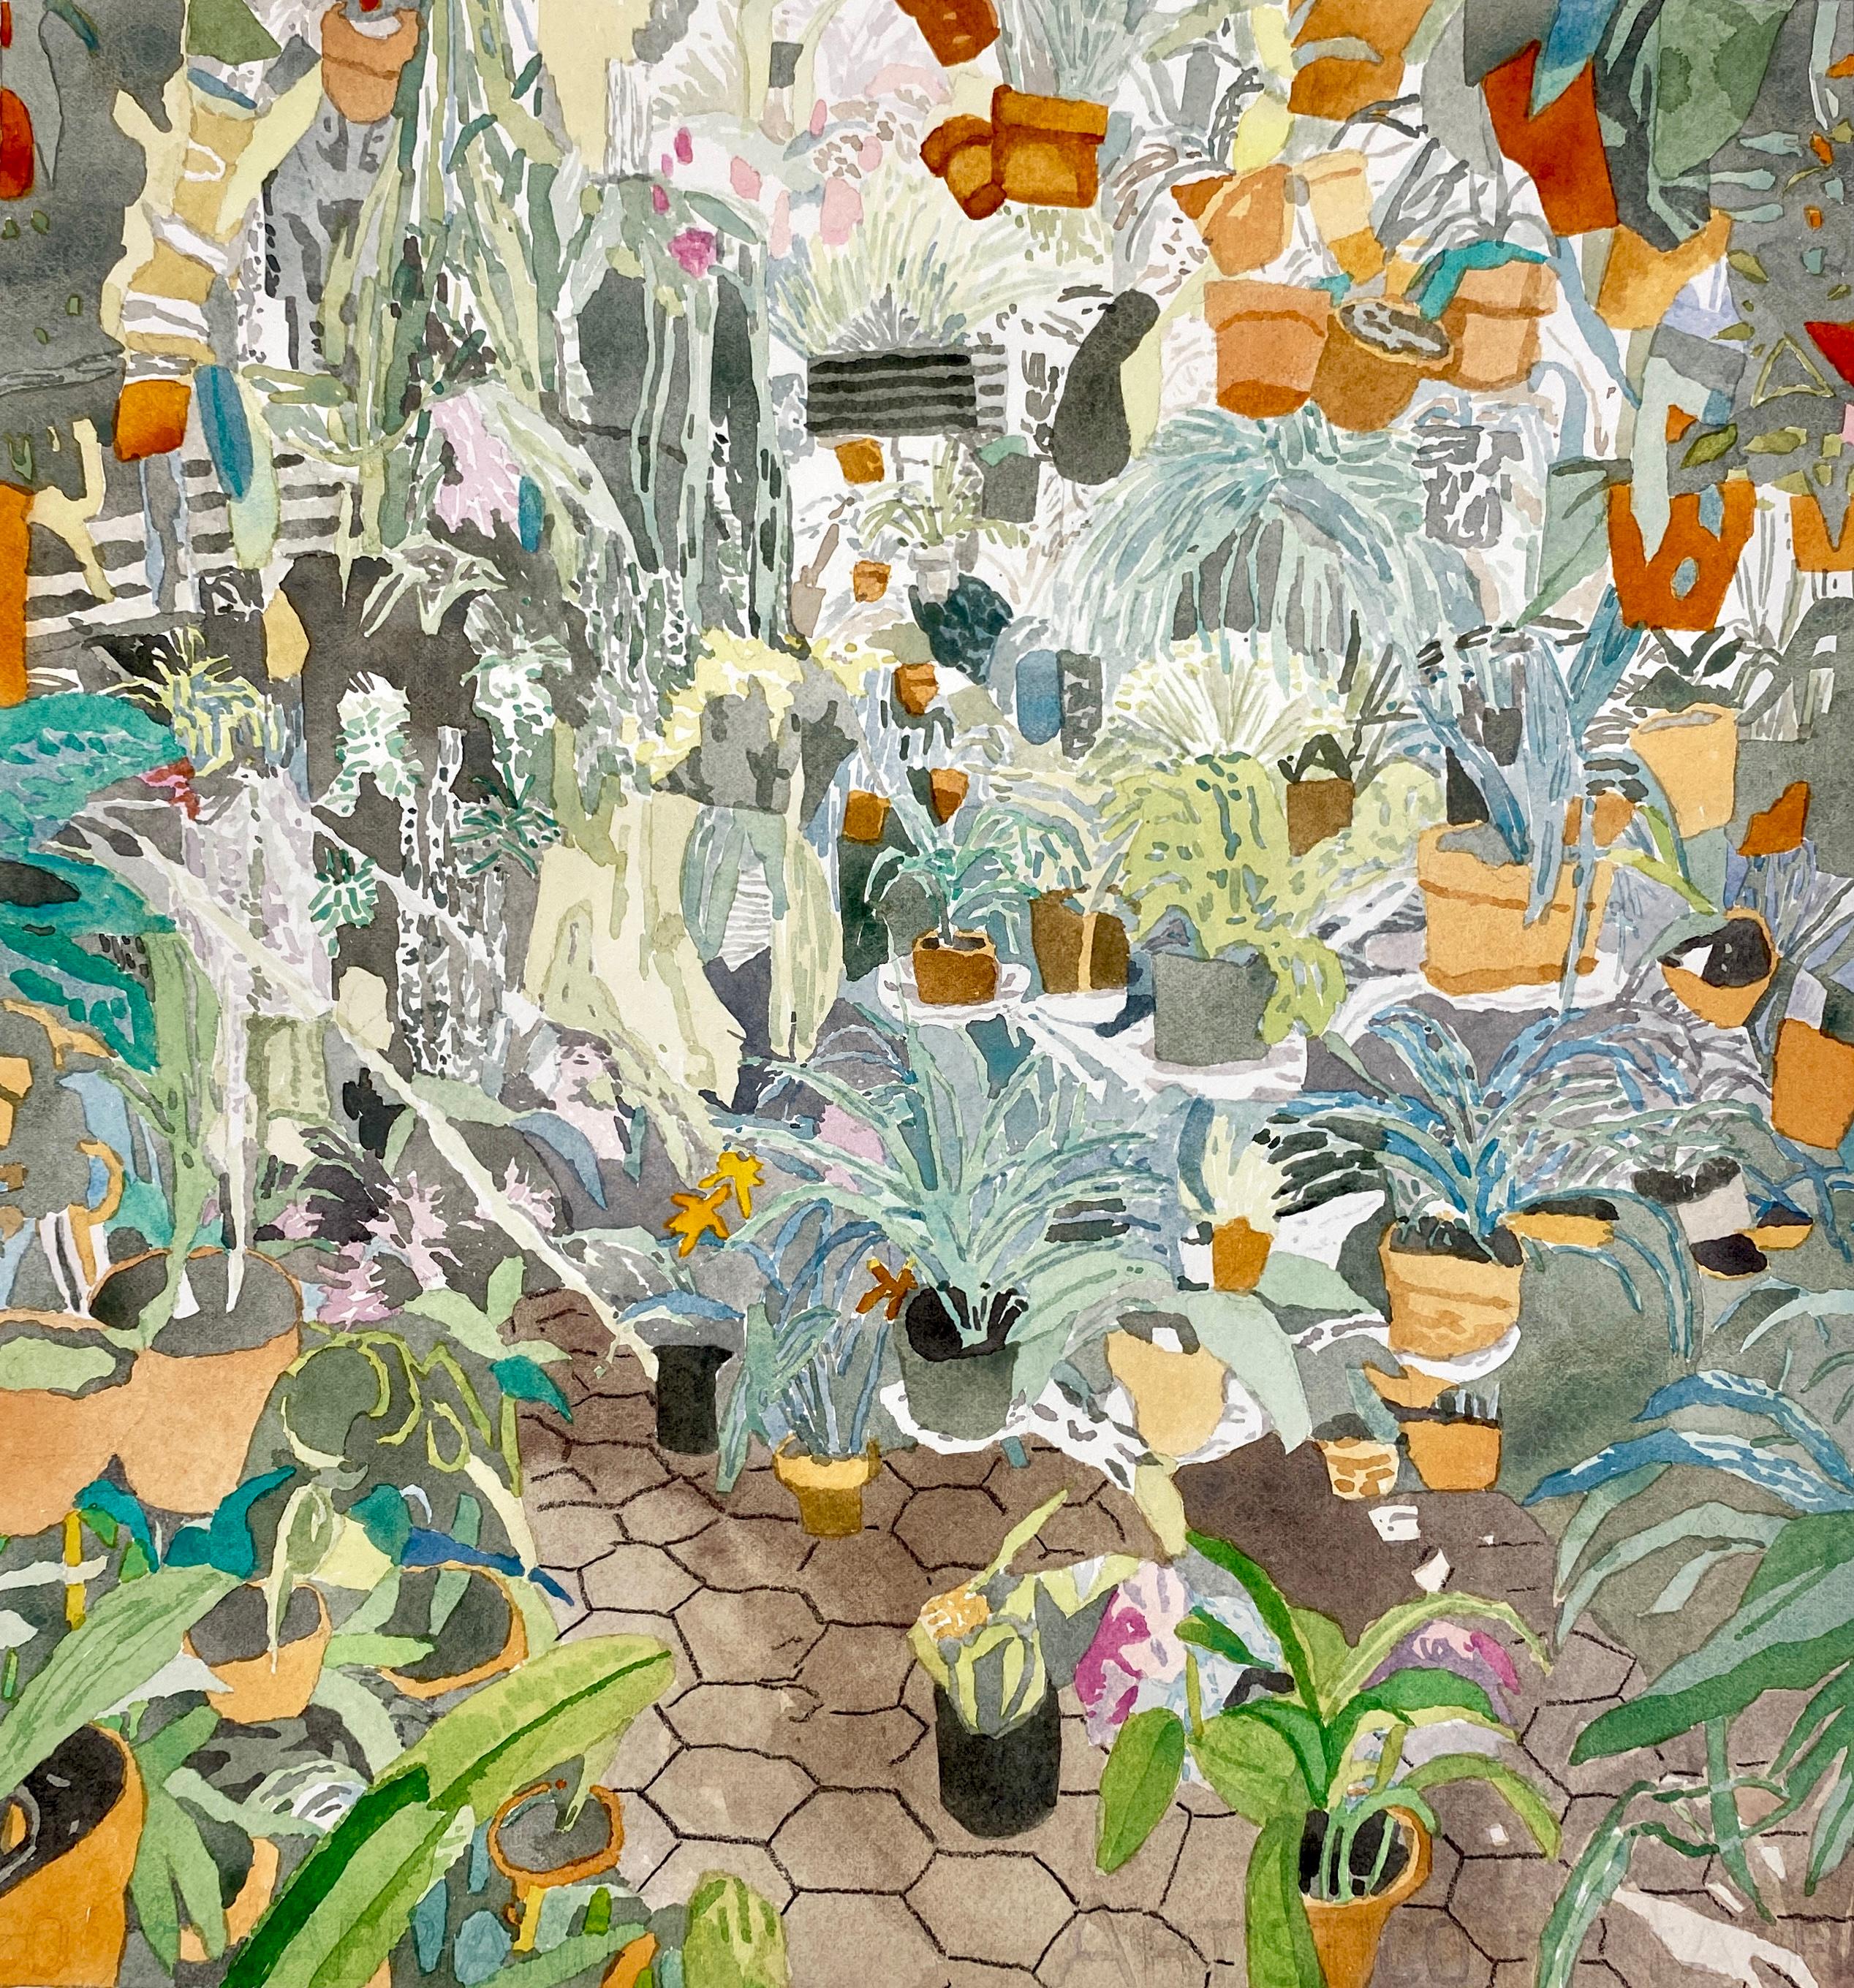 Figurative Art Bradley Kerl - Living with Plants 2, aquarelle figurative contemporaine, Intérieurs, Flora